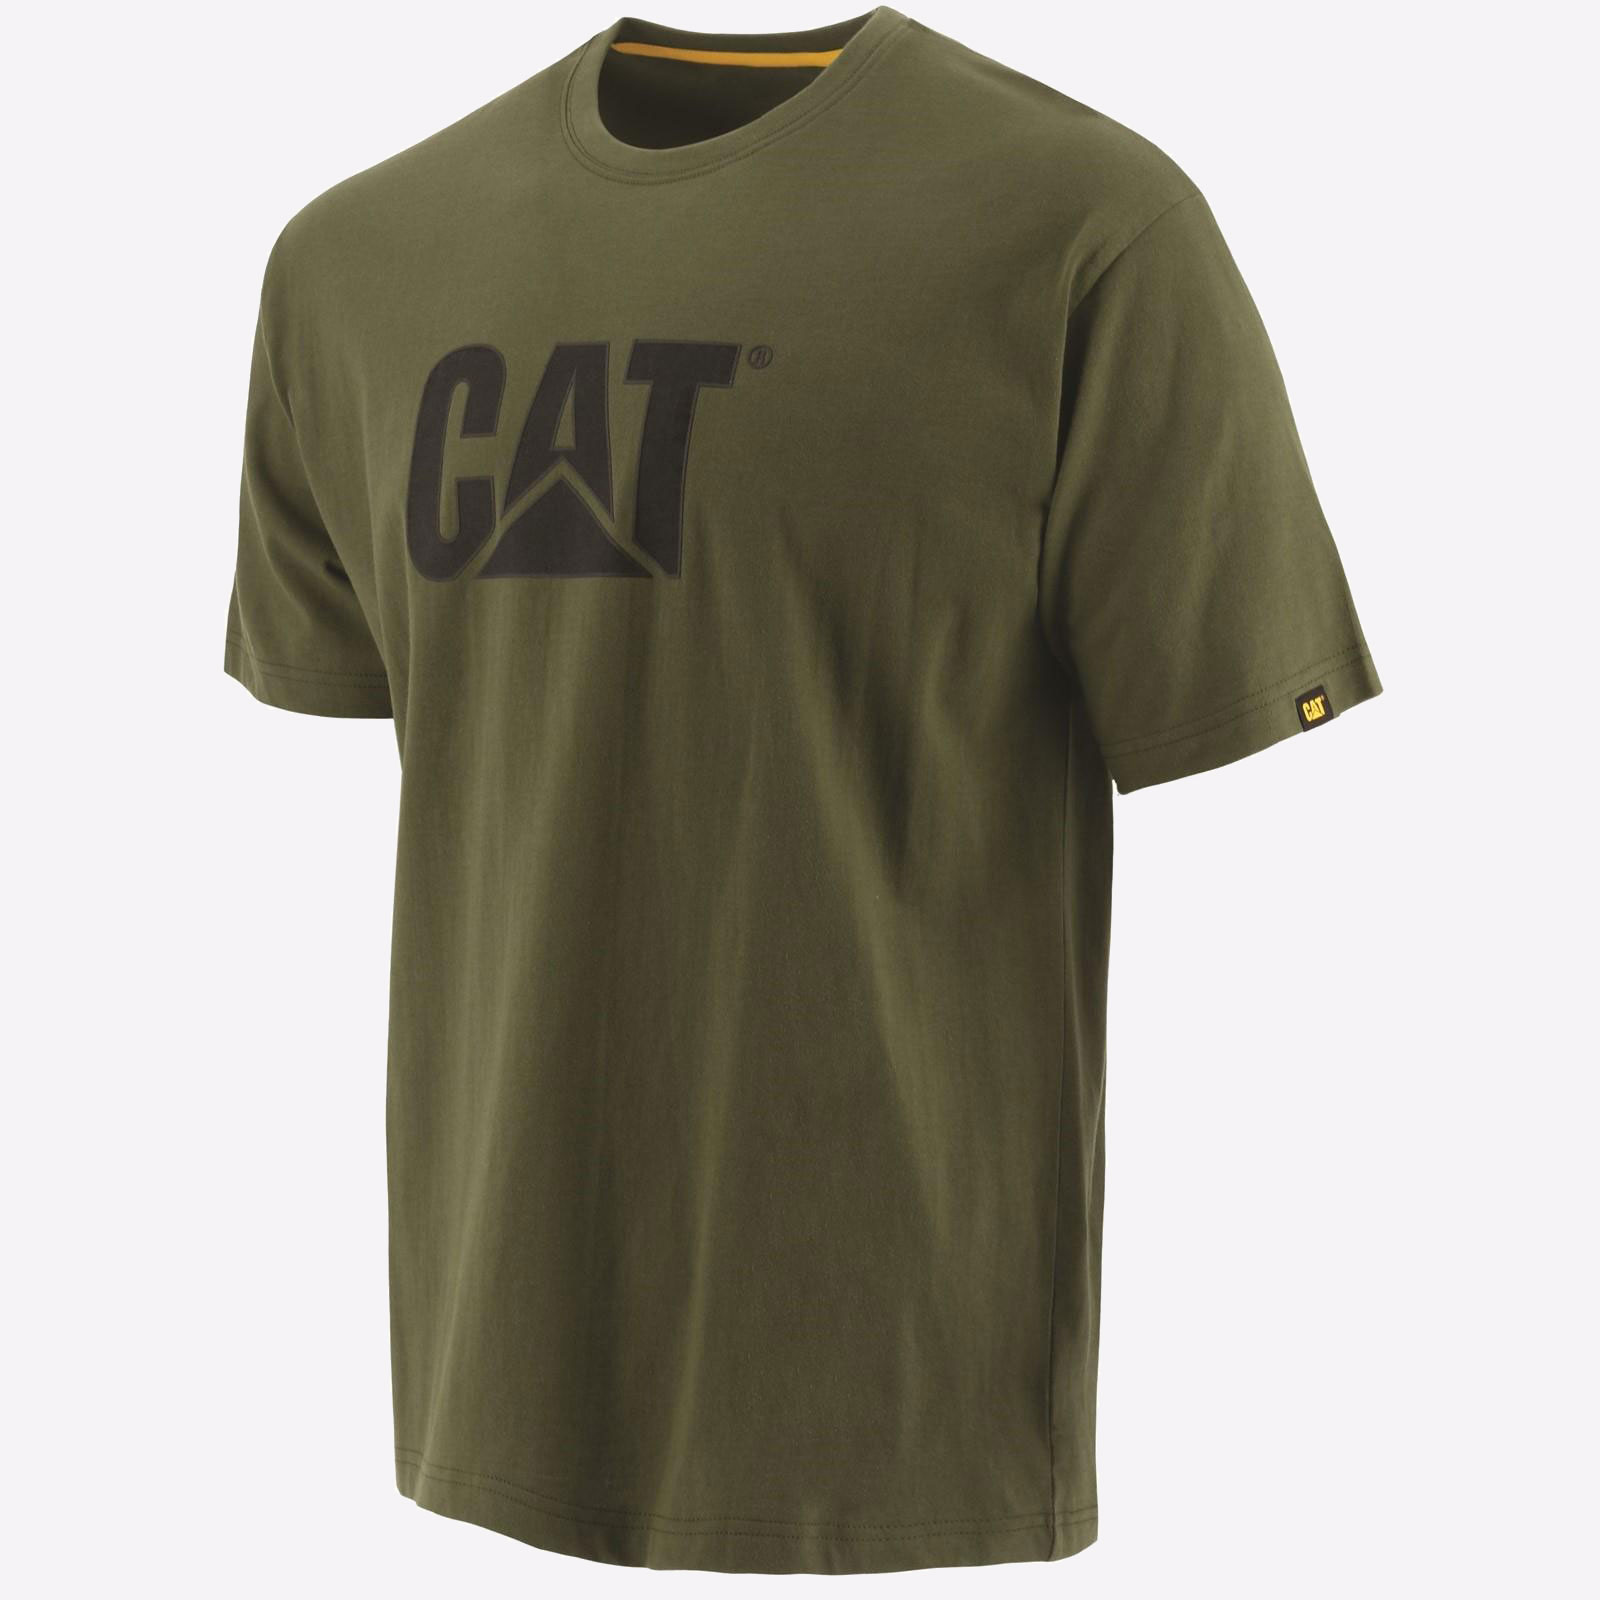 Caterpillar Trademark Logo T-Shirt Mens - GRD-25301-55206-09